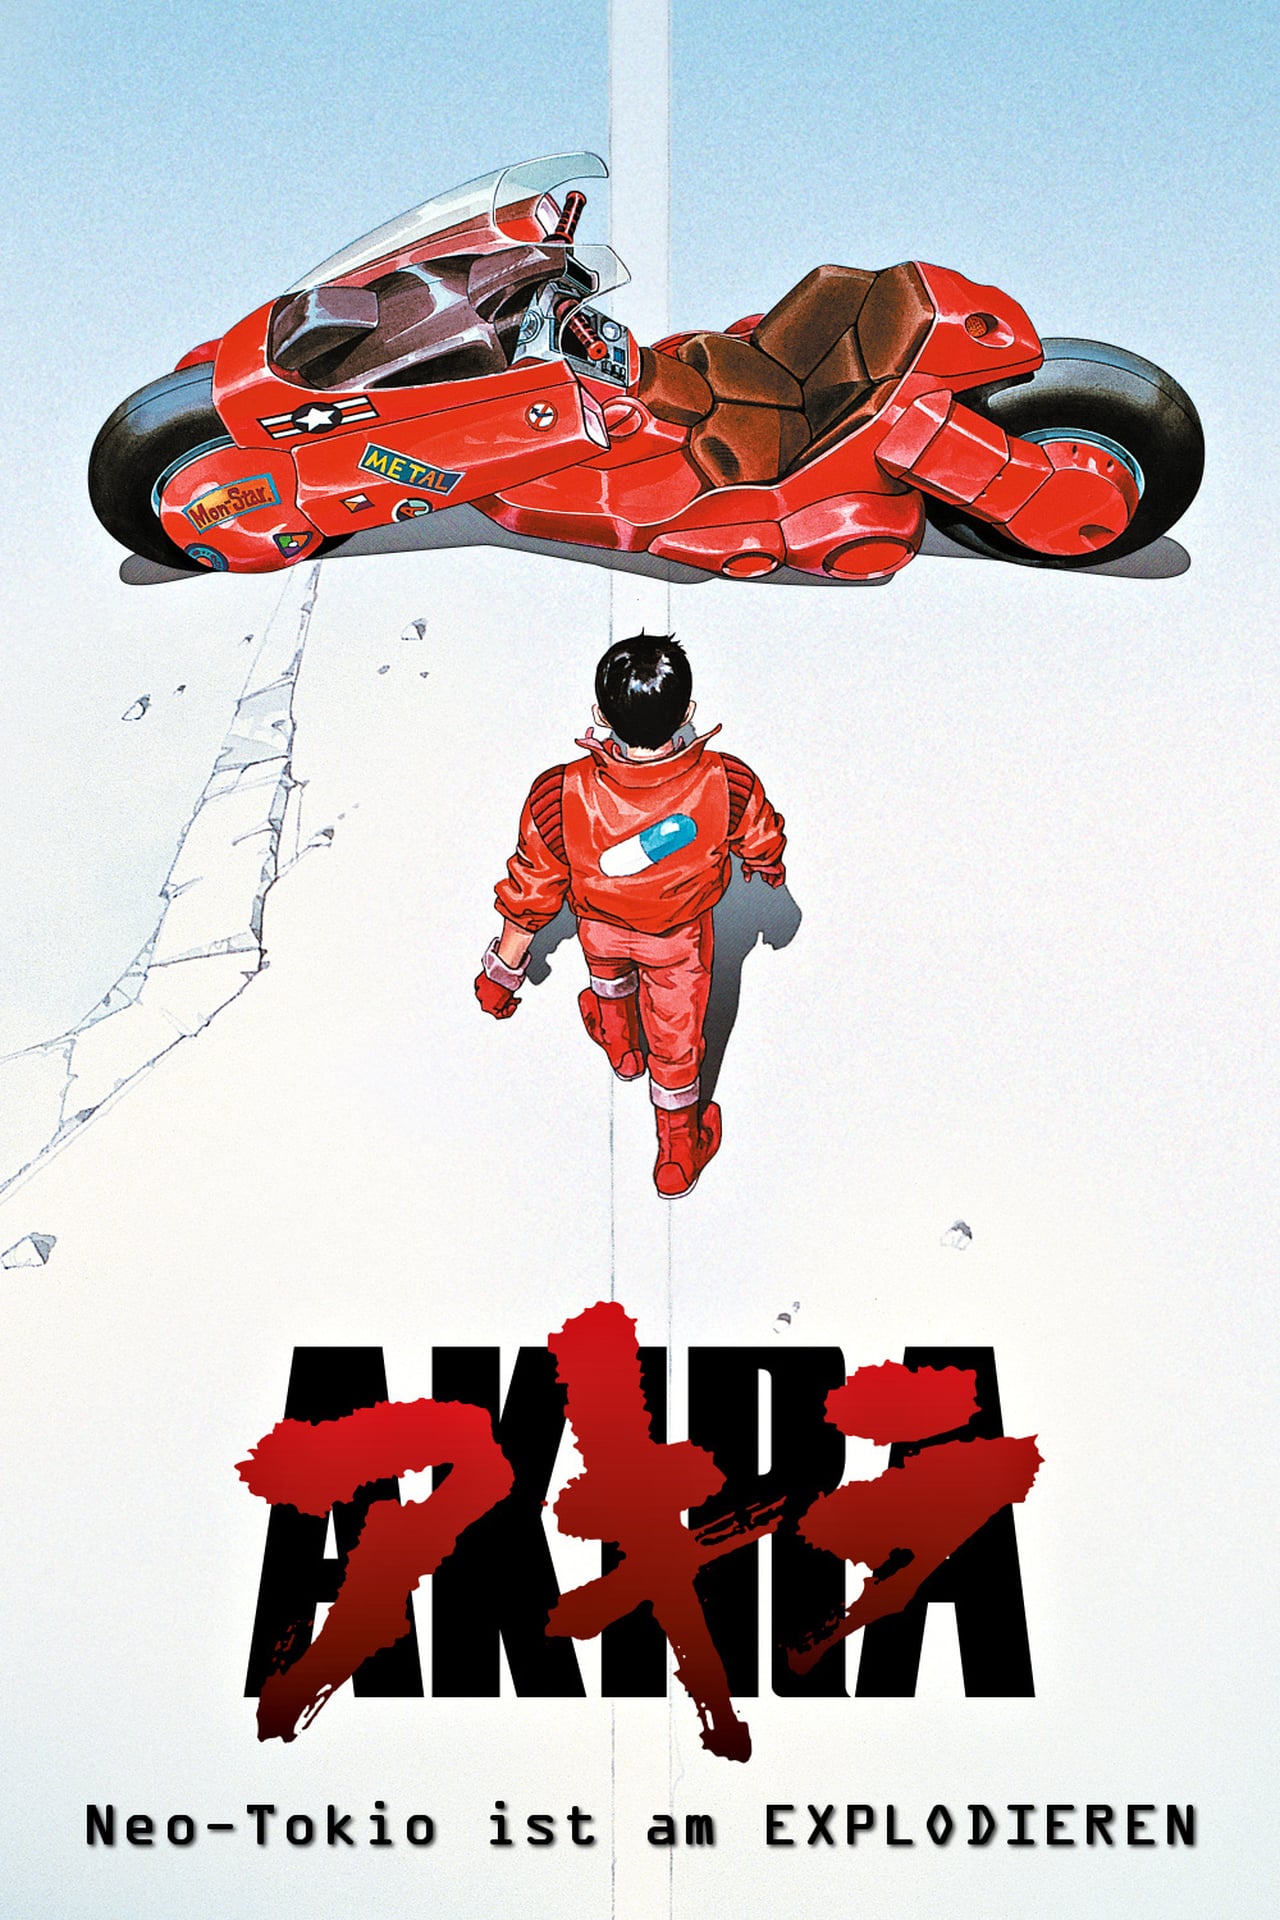 Poster Akira